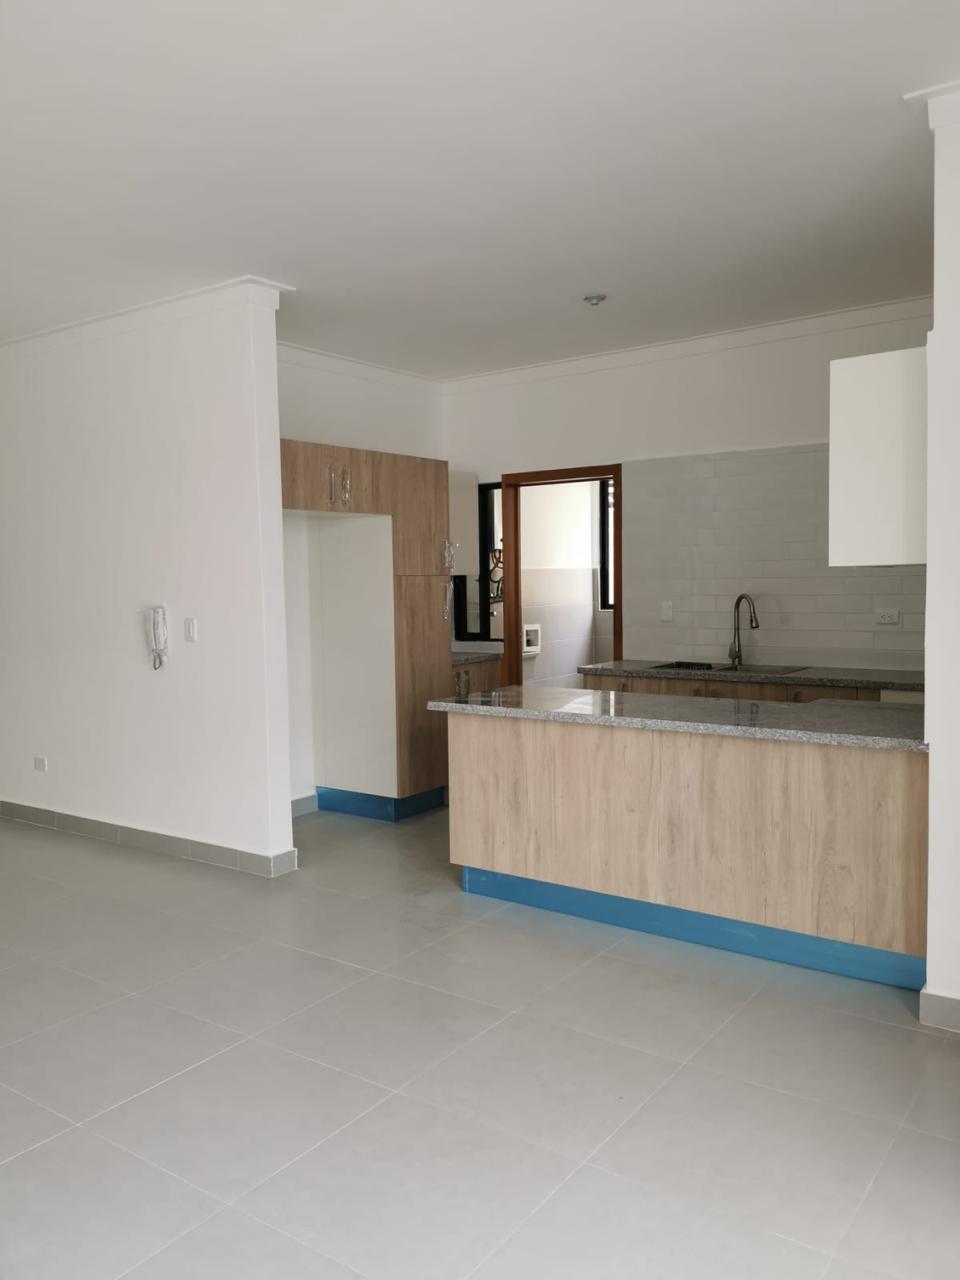 Apartamento en venta Zona Mirador Norte. Foto 7222409-4.jpg